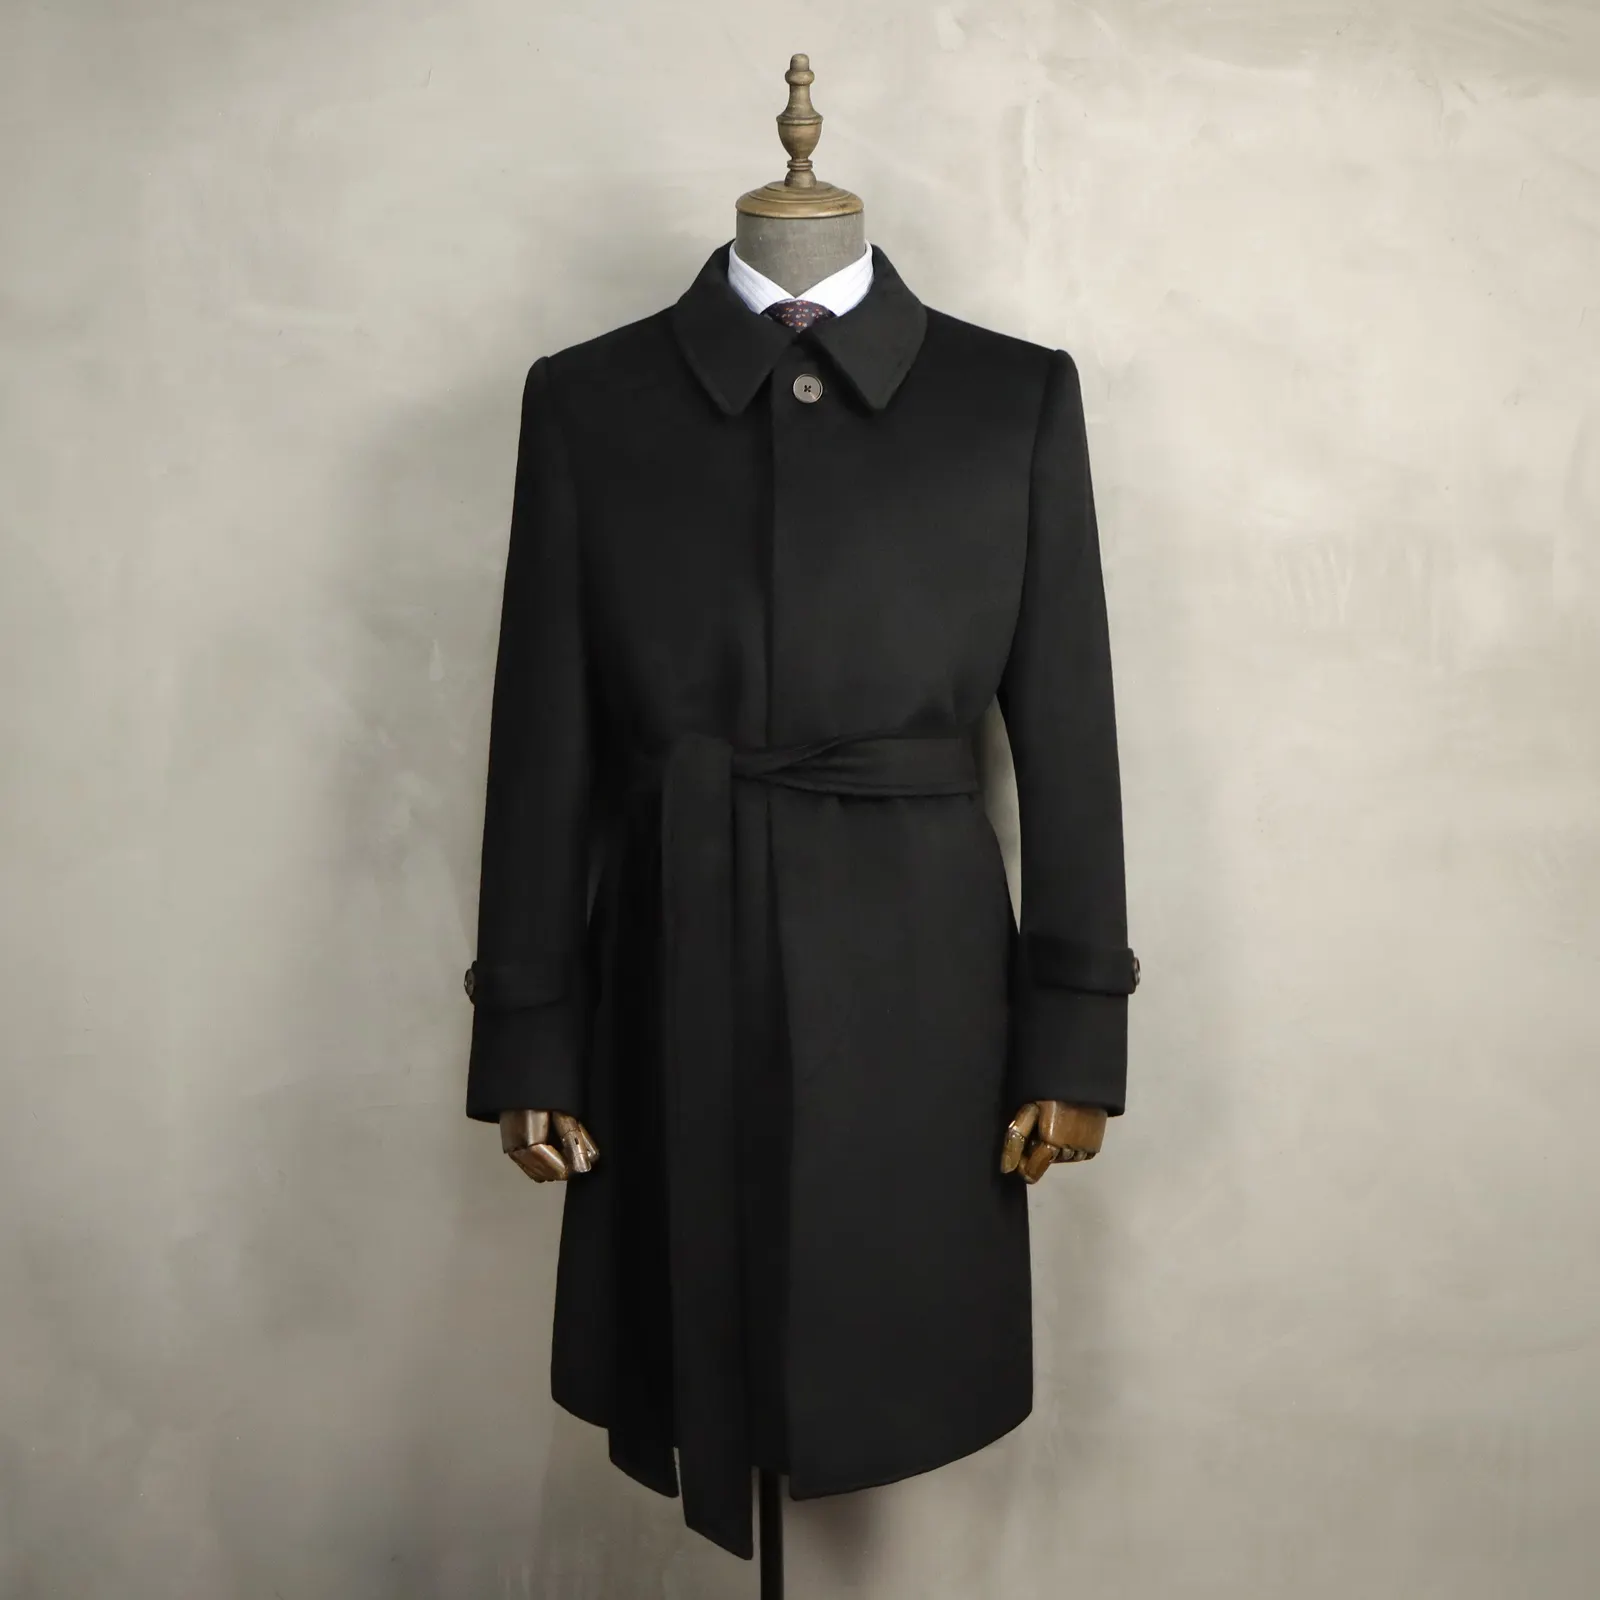 MTM kaşmir palto özel siyah palto erkekler yün terzi yapılan erkek yün palto % 30% kaşmir sipariş için